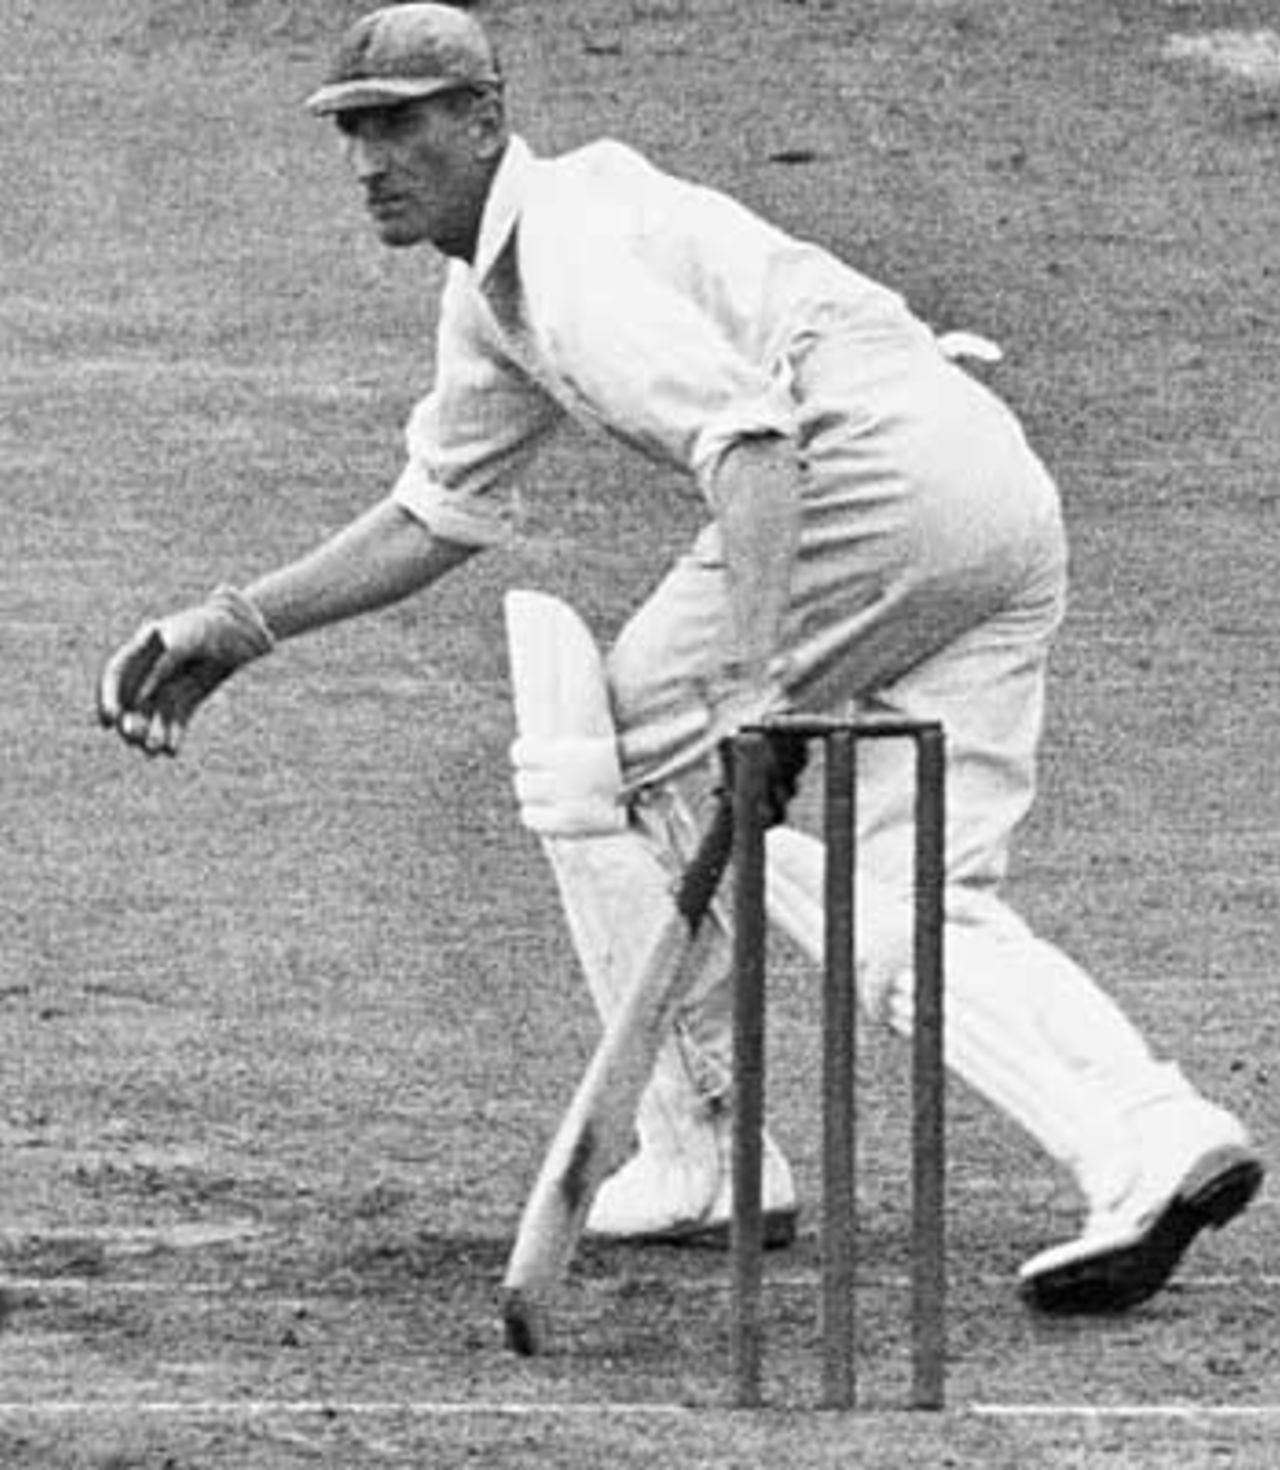 Douglas Jardine in action, 1930